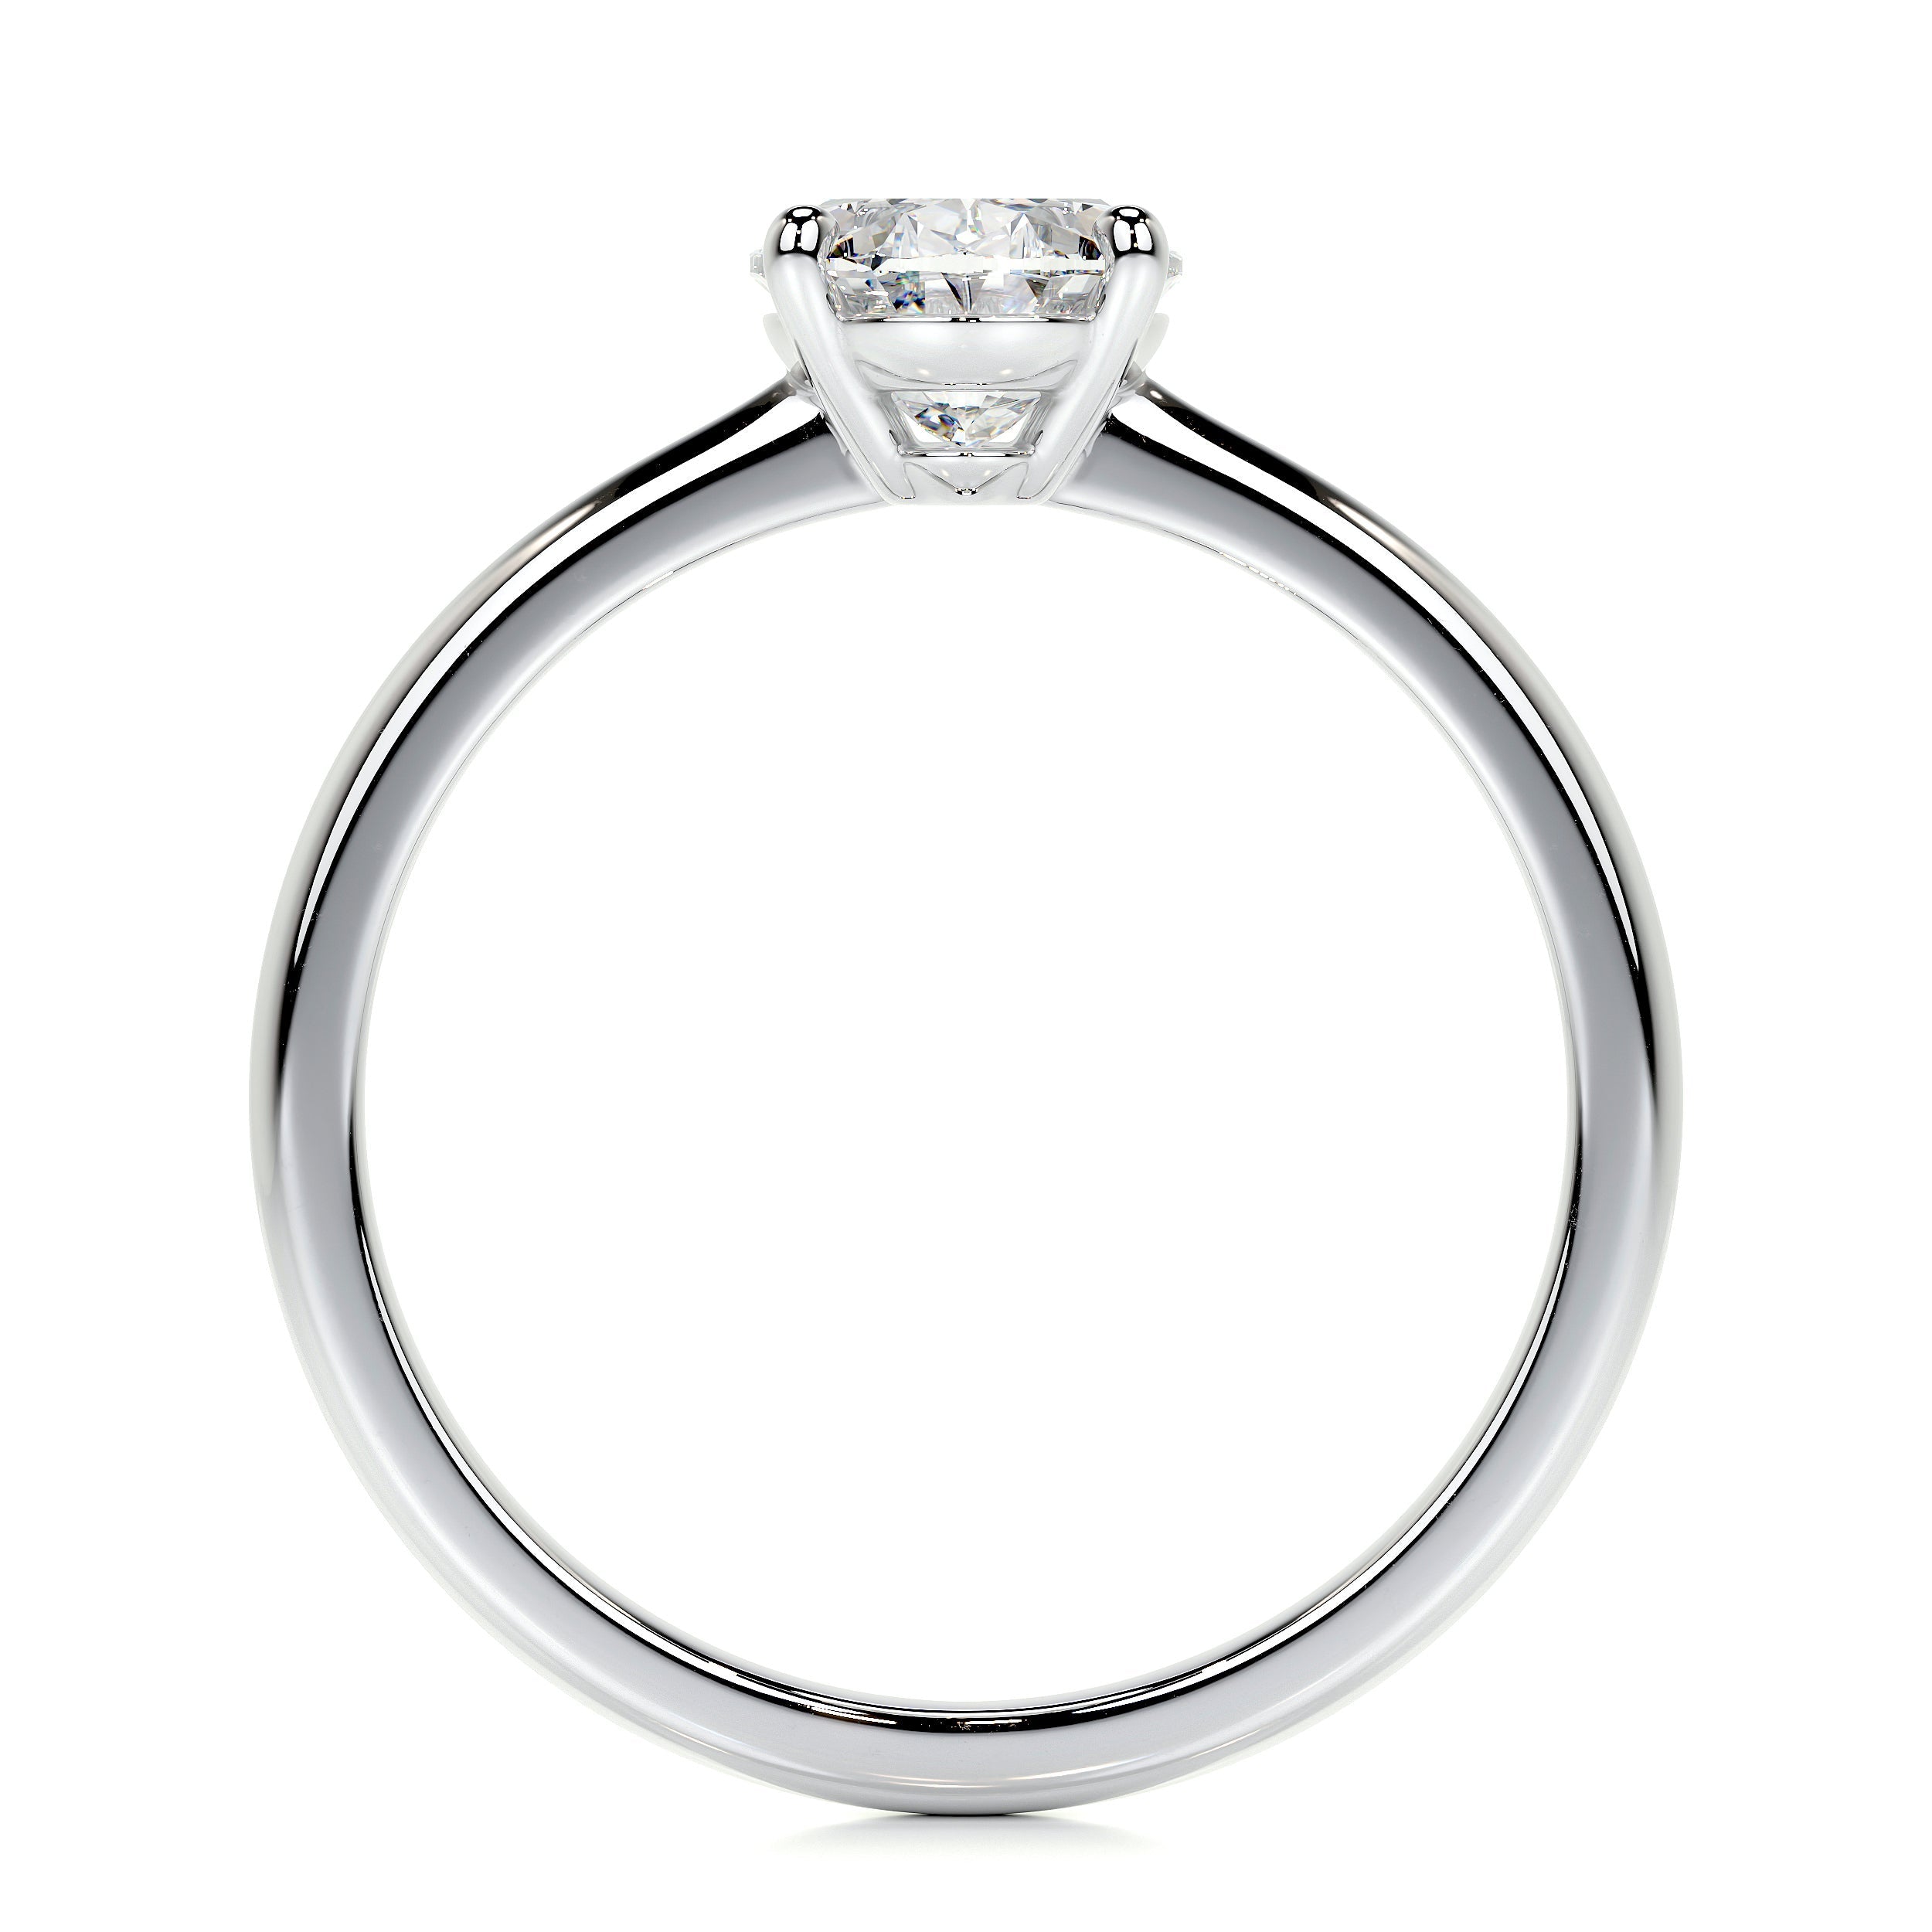 Julia Lab Grown Diamond Ring   (1 Carat) -18K White Gold